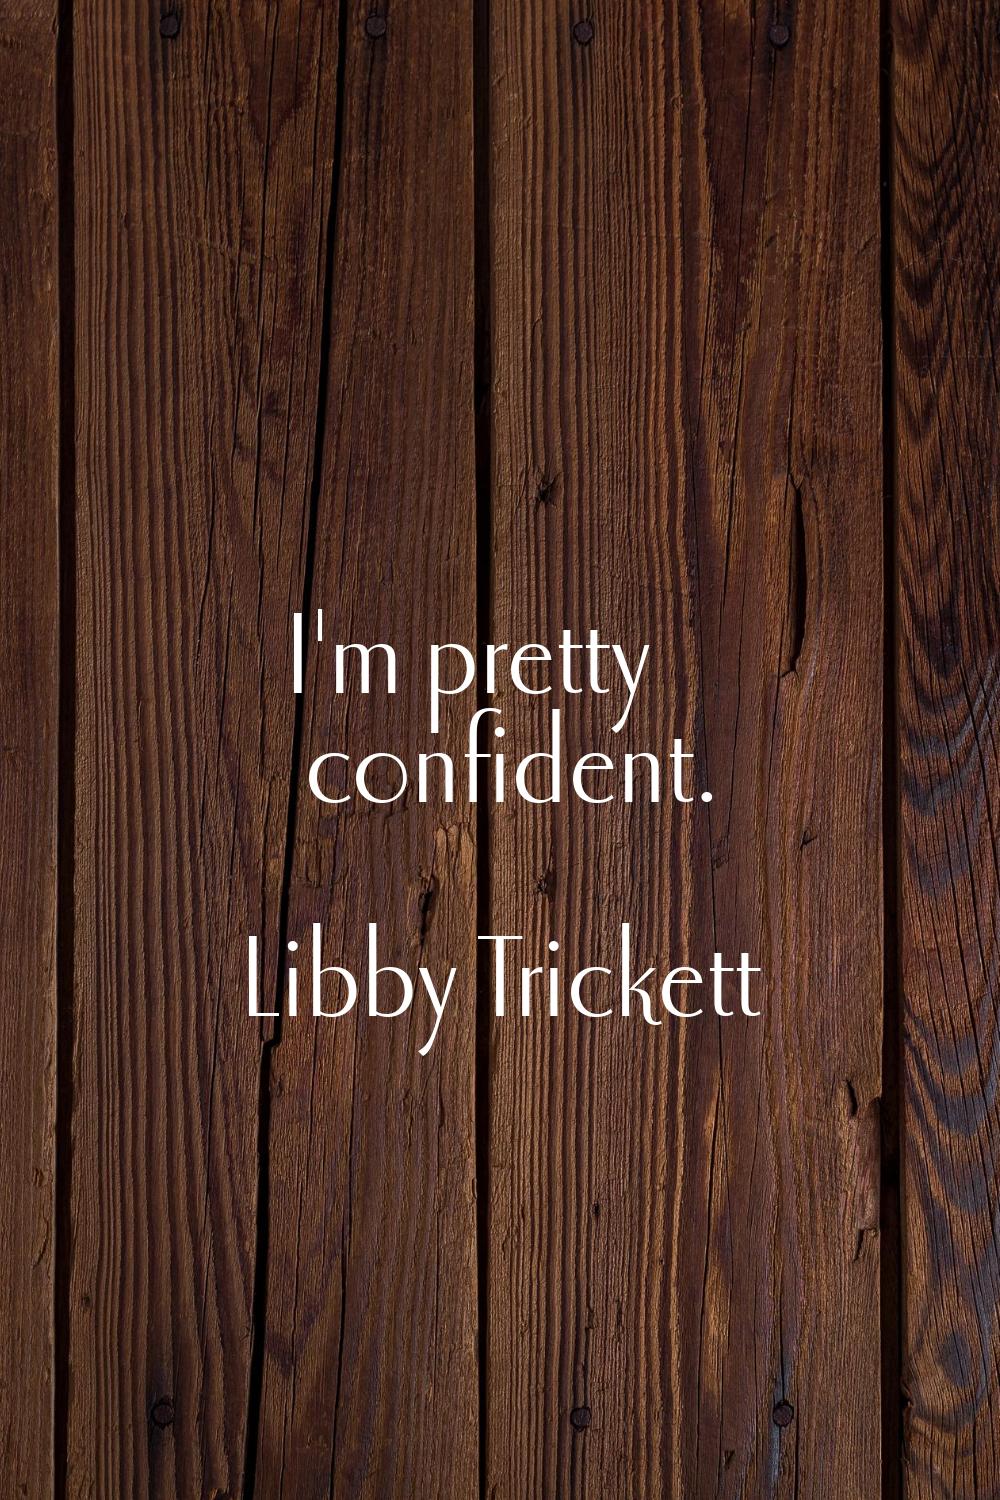 I'm pretty confident.